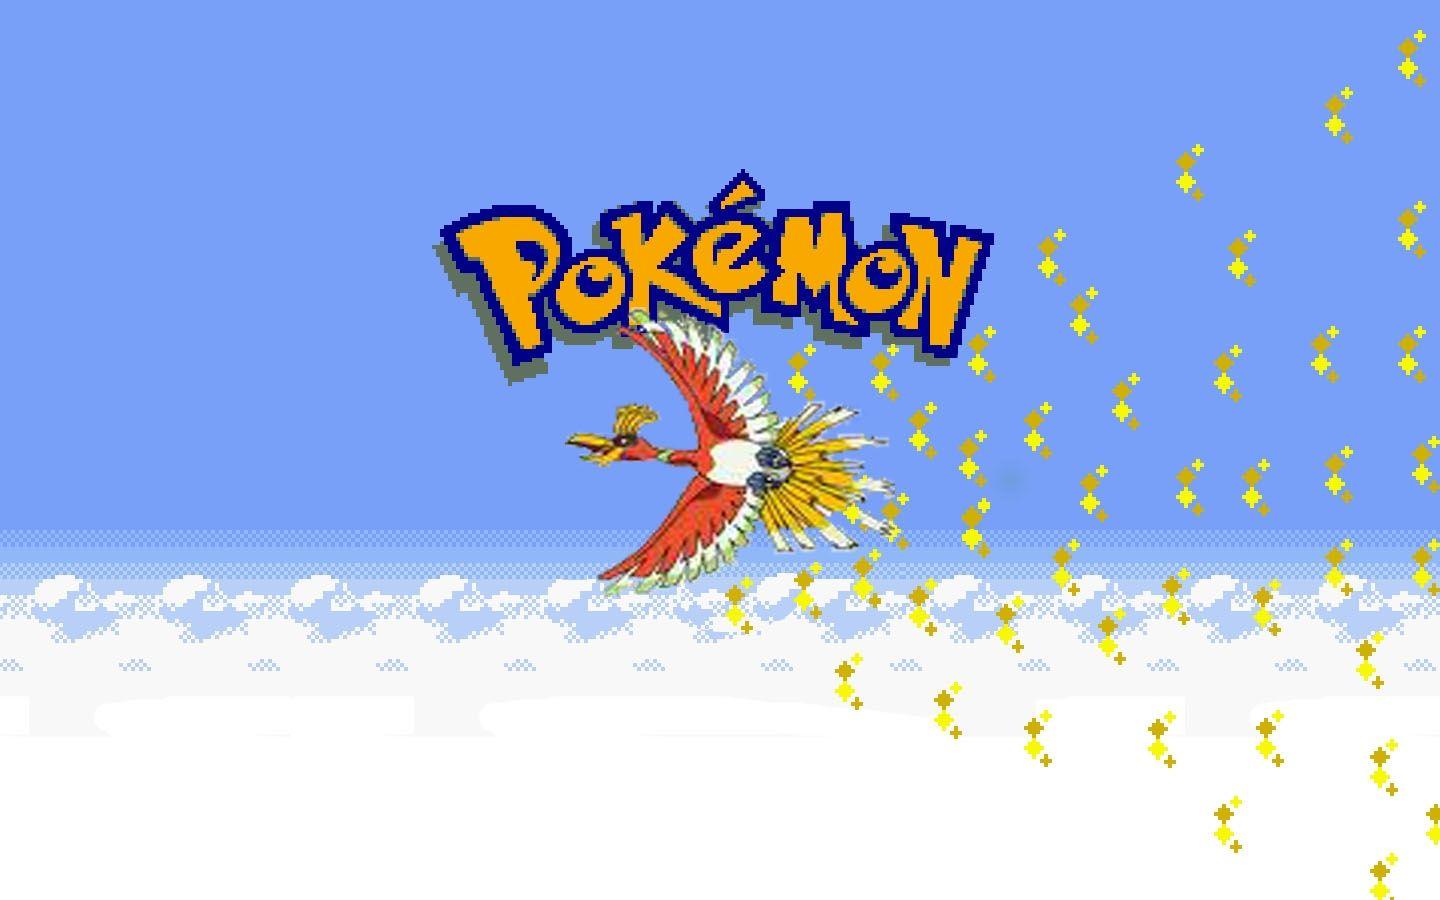 download pokemon gold pc version